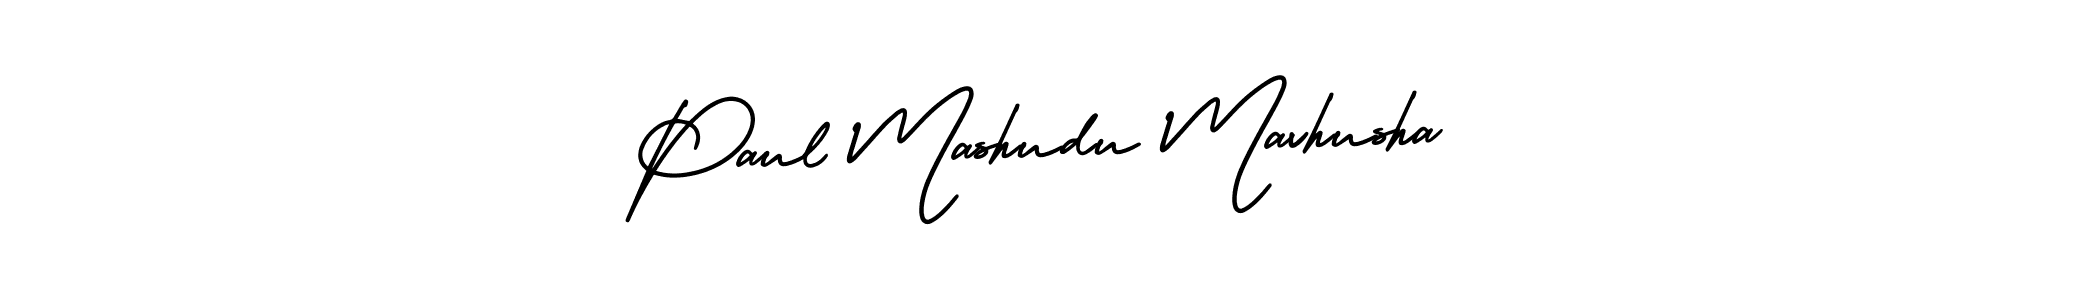 Best and Professional Signature Style for Paul Mashudu Mavhusha. AmerikaSignatureDemo-Regular Best Signature Style Collection. Paul Mashudu Mavhusha signature style 3 images and pictures png